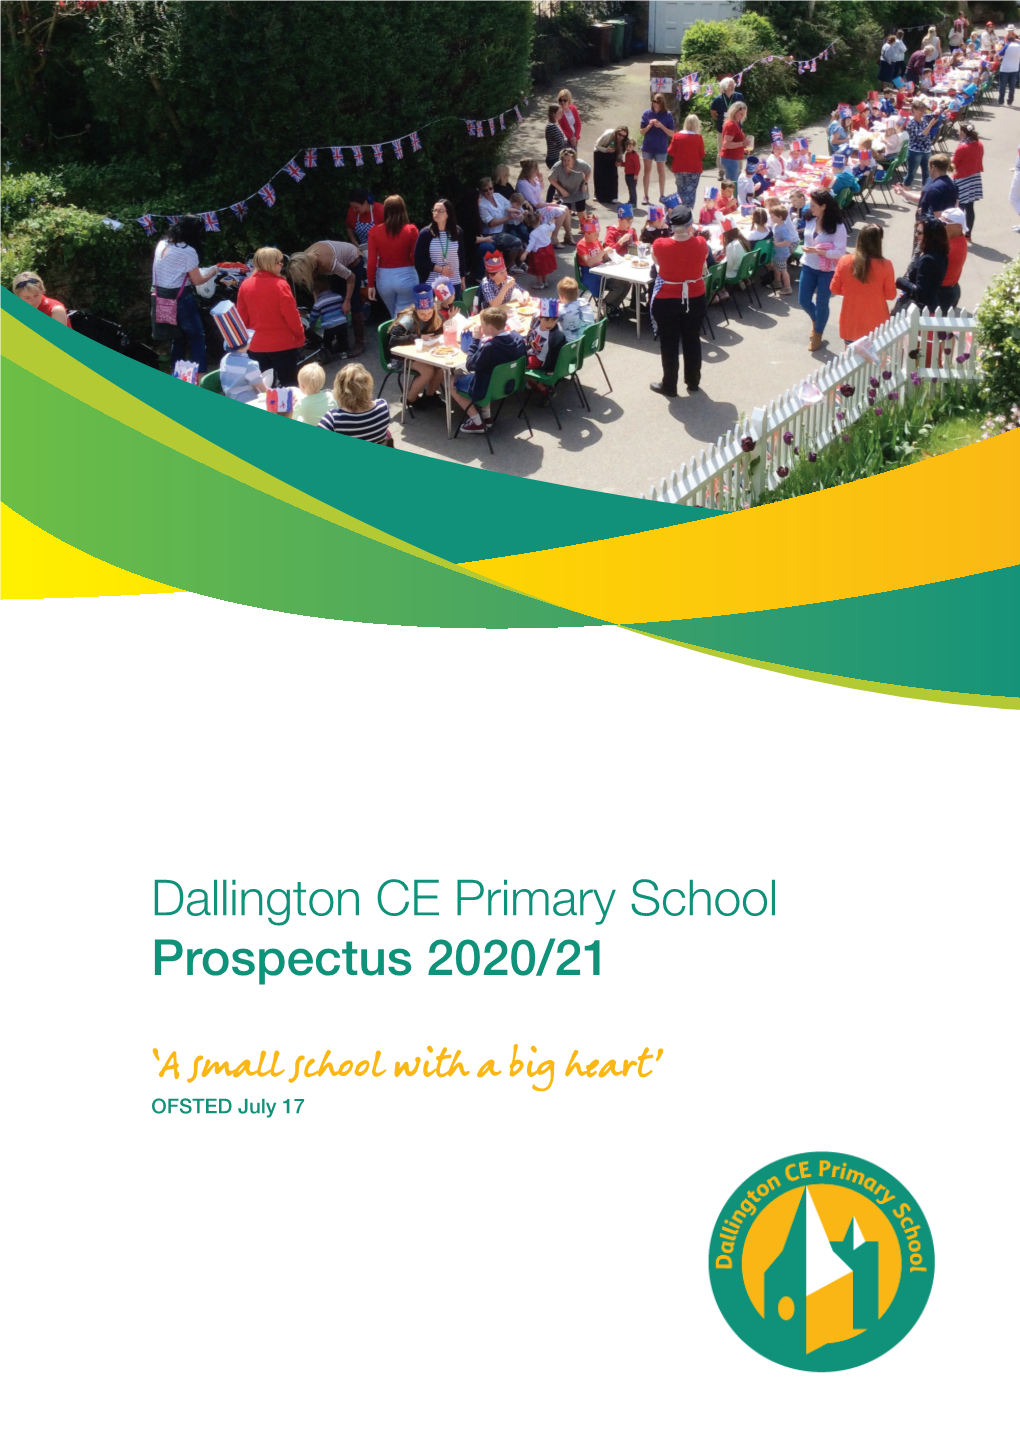 Dallington CE Primary School Prospectus 2020/21